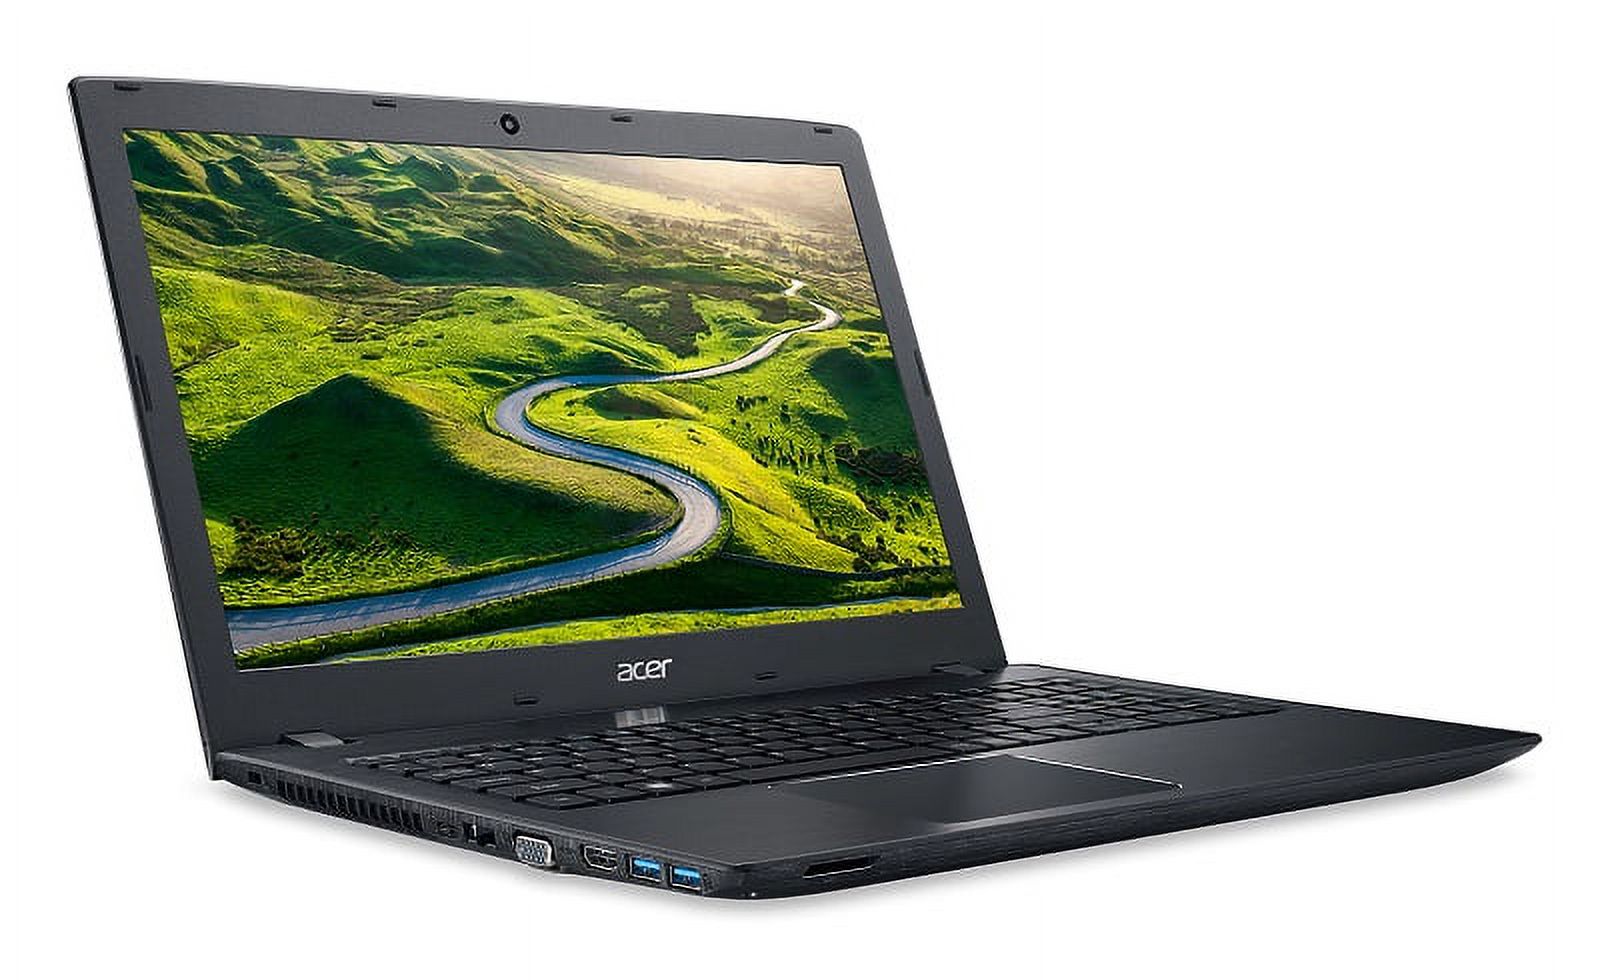 Acer Aspire E5-575-72N3, 15.6" Full HD, 7th Gen Intel Core i7-7500U, 8GB DDR4, 1TB HDD, Windows 10 Home - image 3 of 6